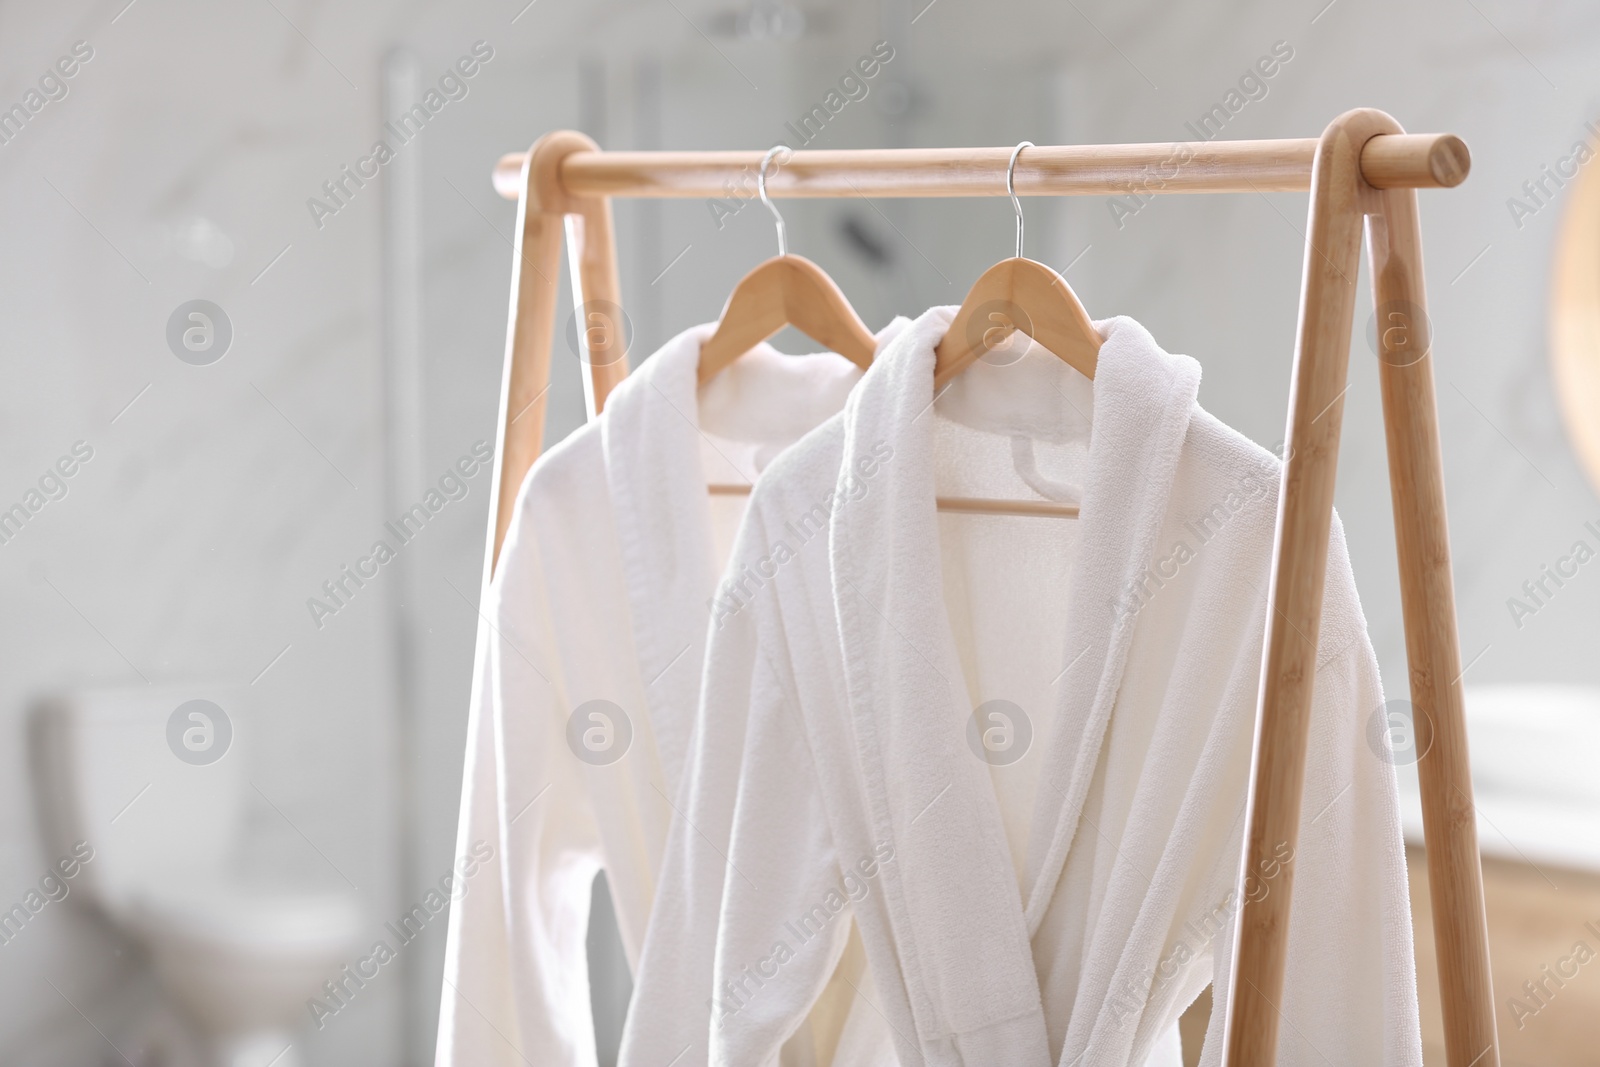 Photo of Fresh white bathrobes hanging on rack indoors